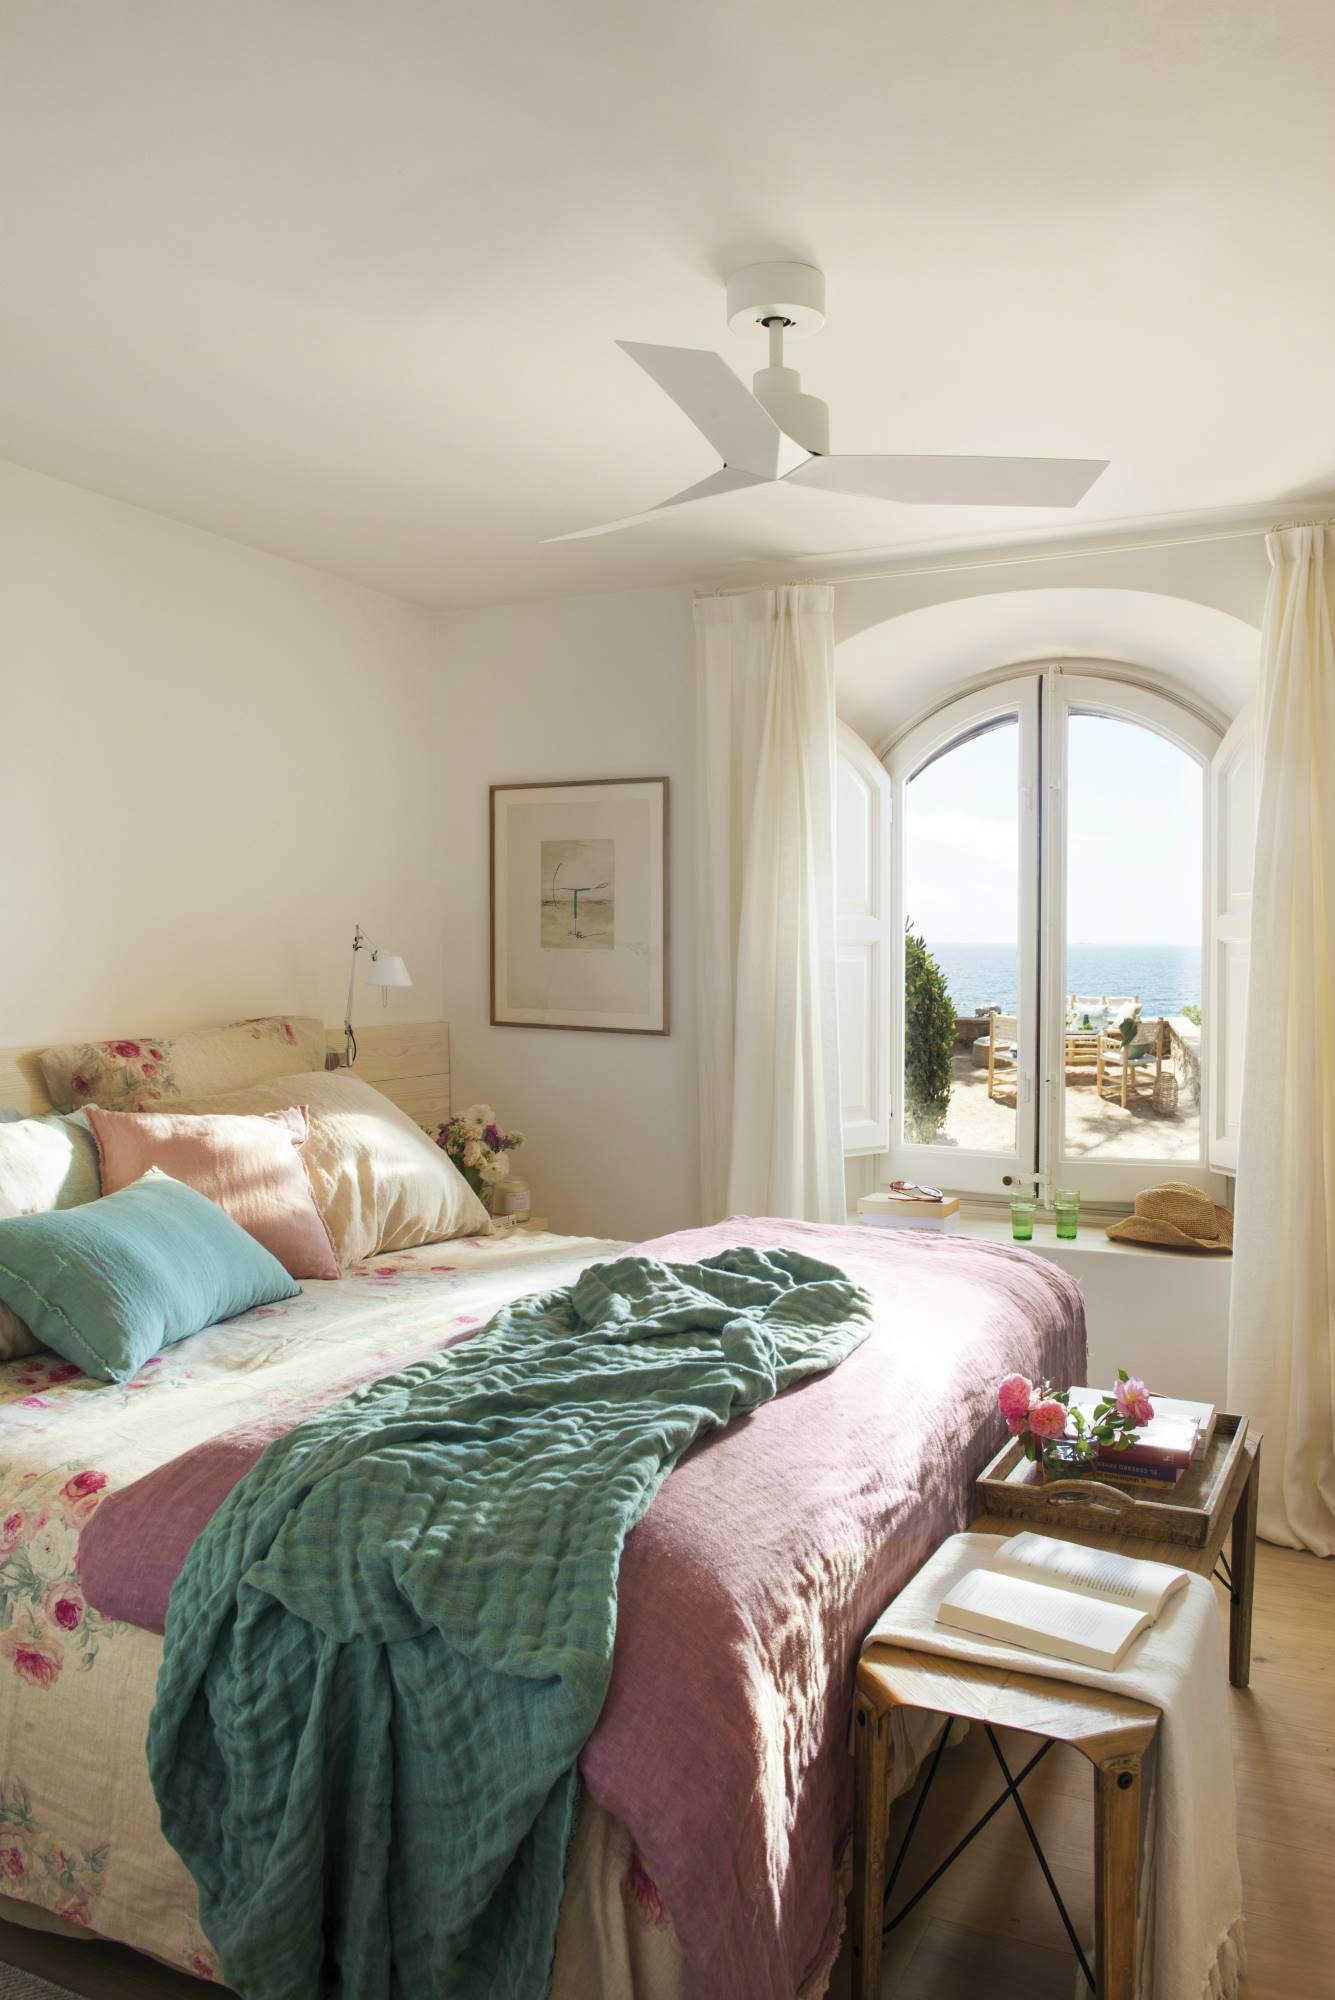 Dormitorio blanco con ropa de cama de estampado floral.